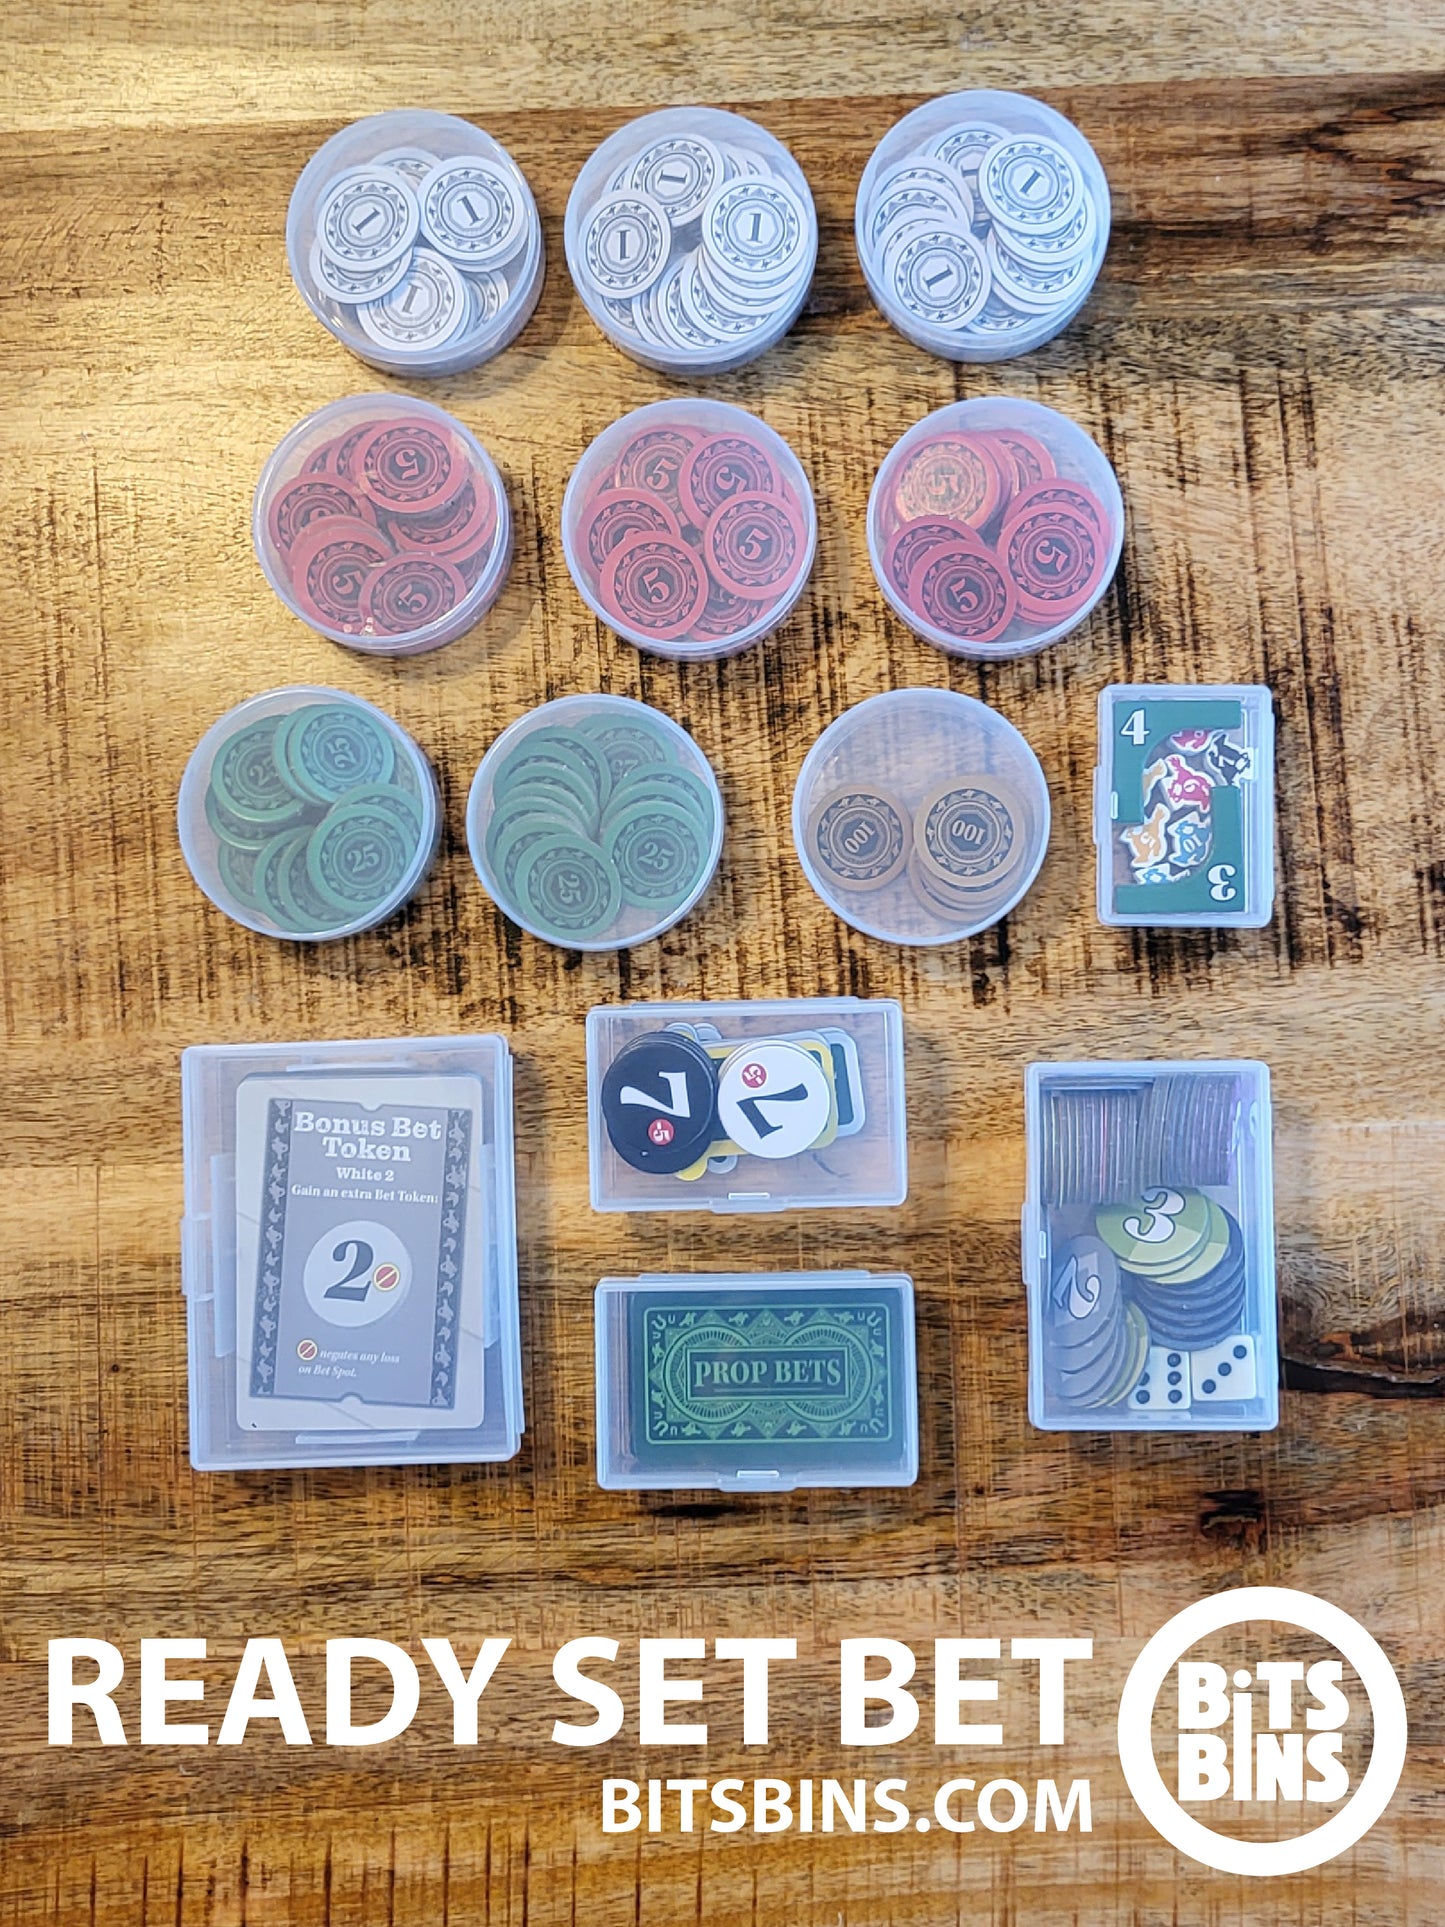 RECOMMENDED READY SET BET BitsBins - 9 Pods, 1 Mini, 2 Originals, 1 XL, 1 Card Box